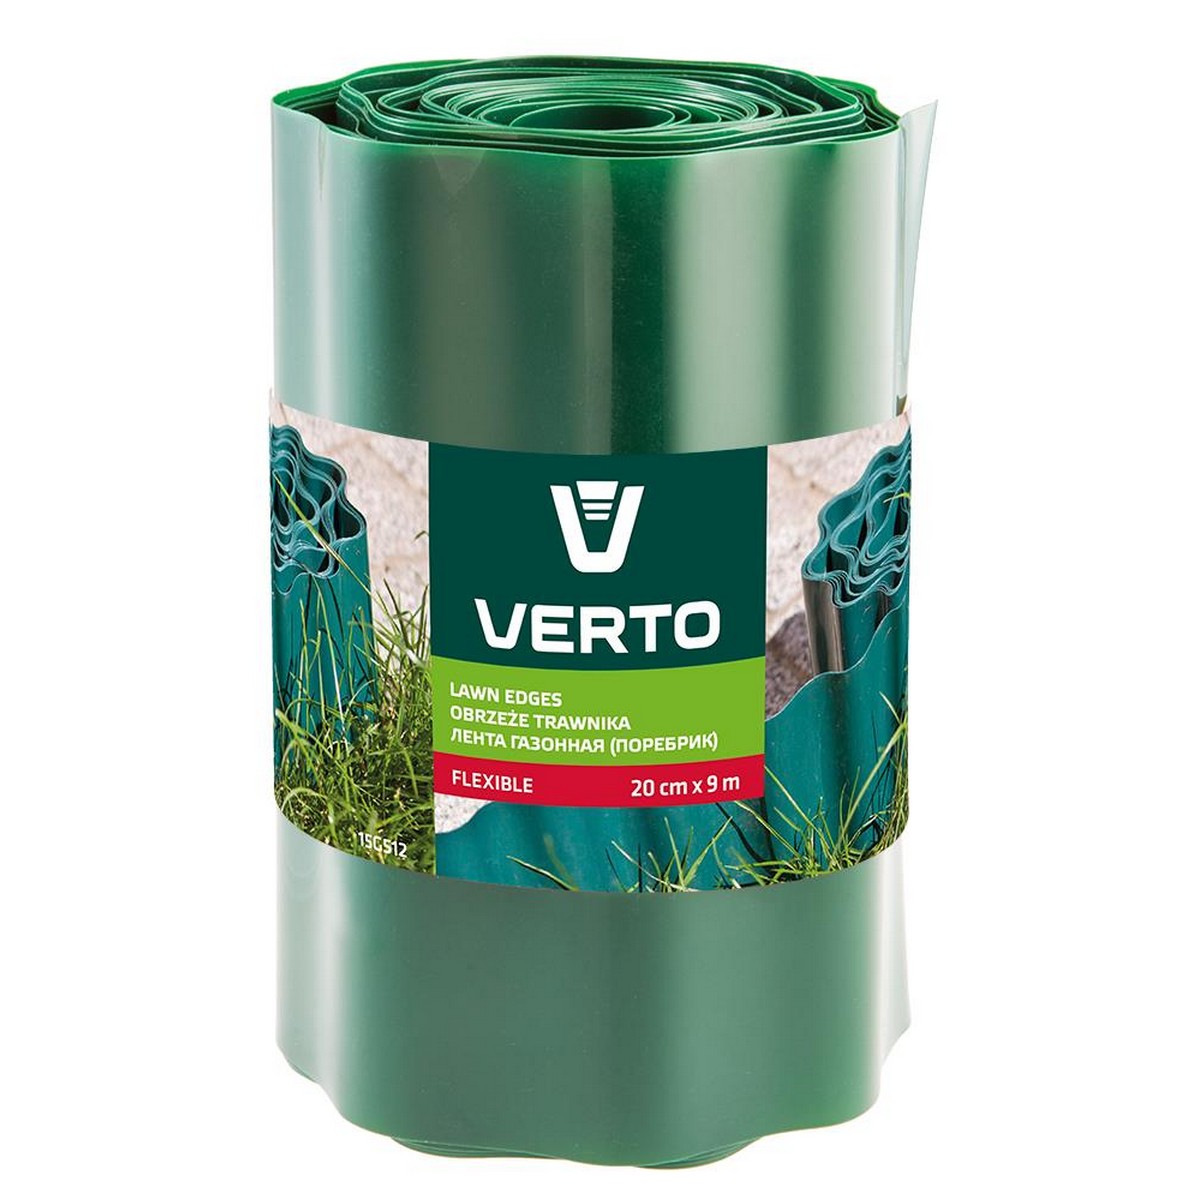 Купить лента газонная Verto 15G512 в Чернигове